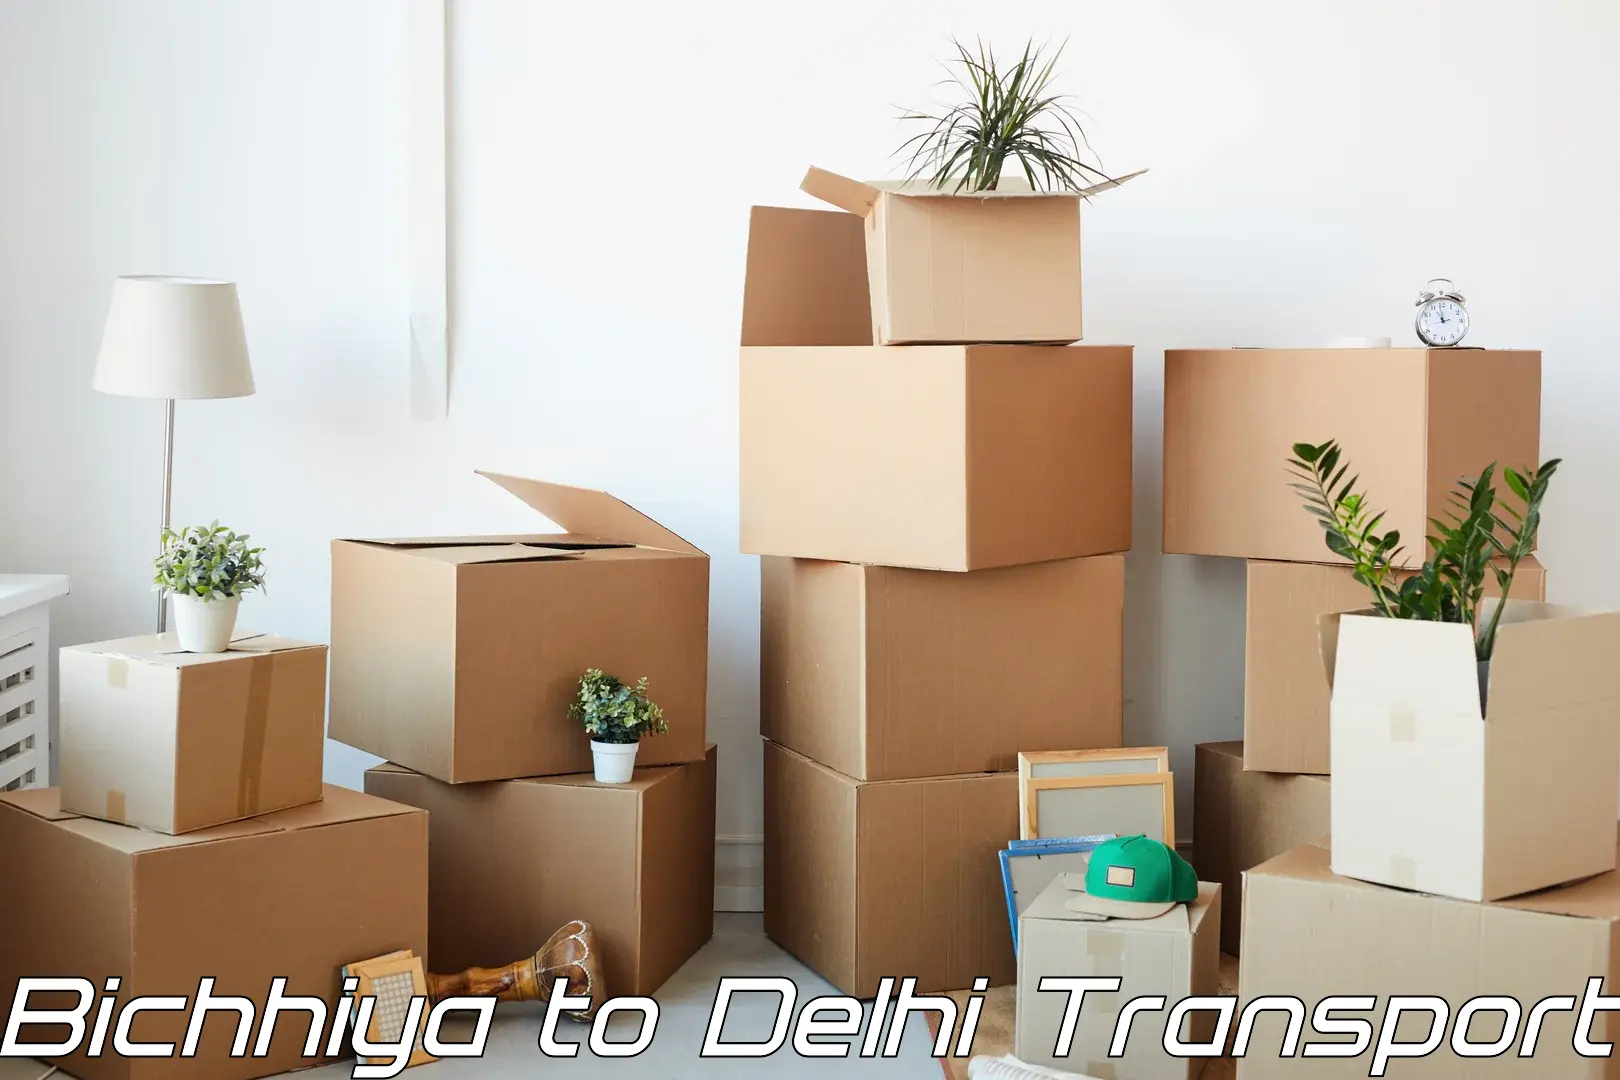 Interstate goods transport Bichhiya to East Delhi